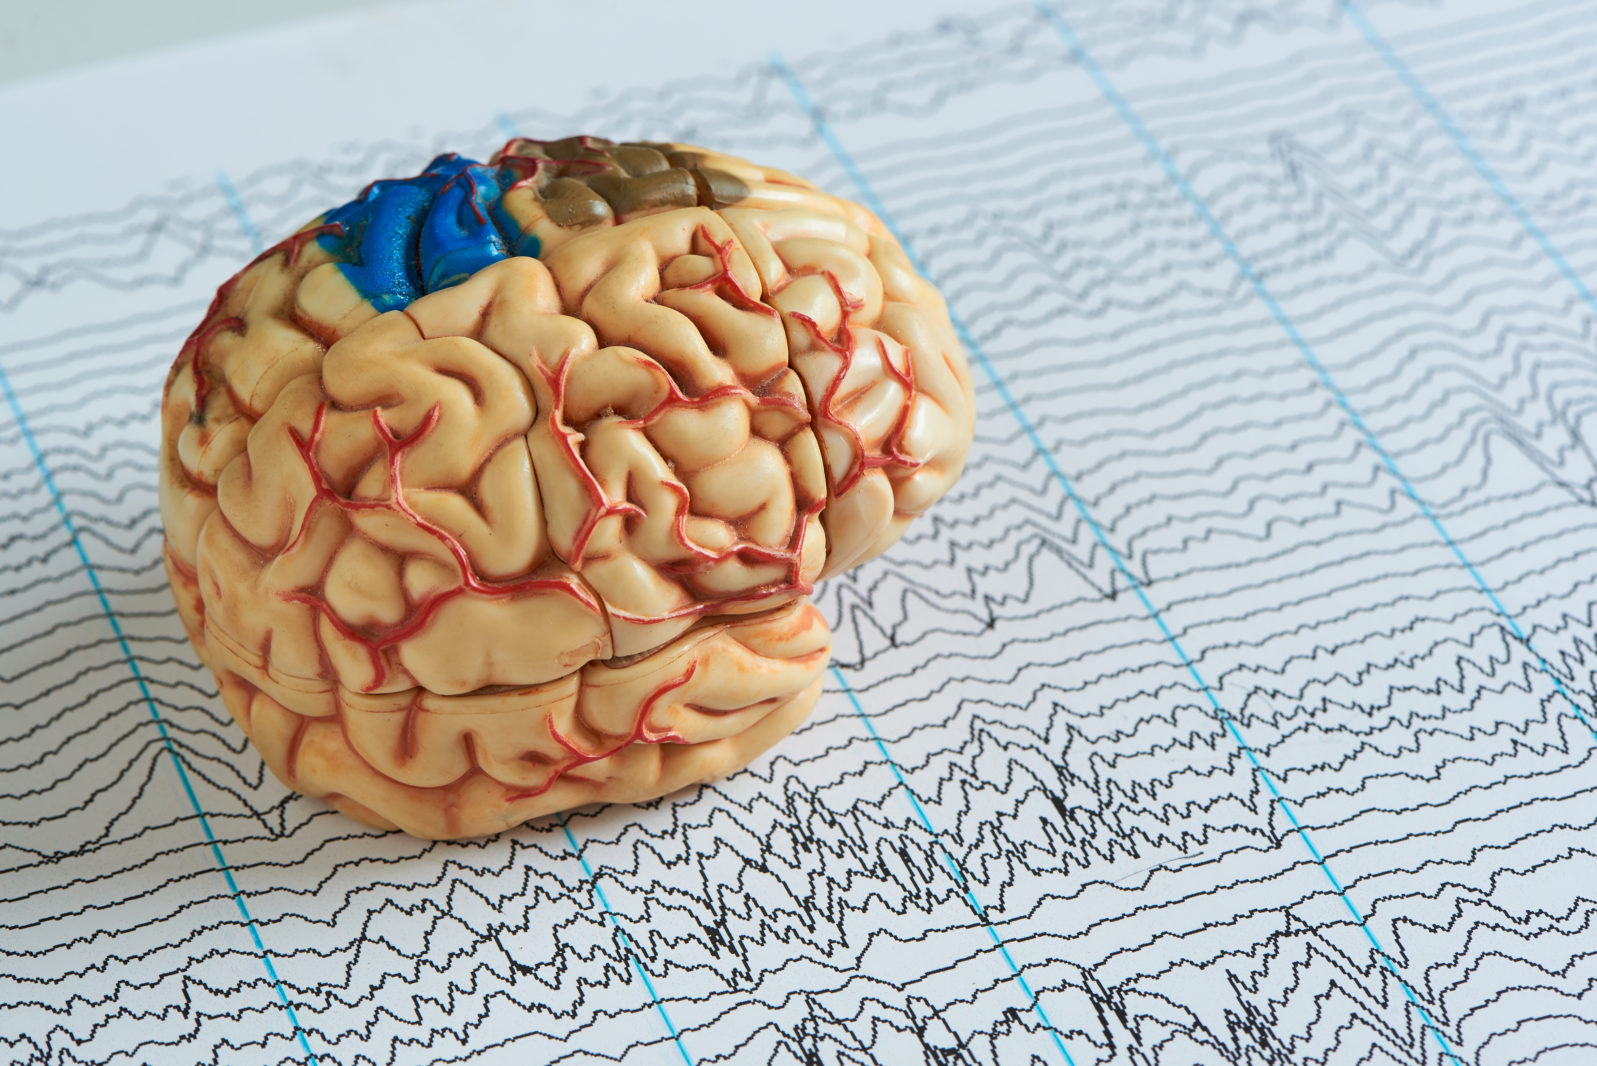 Brain model on EEG waves paper